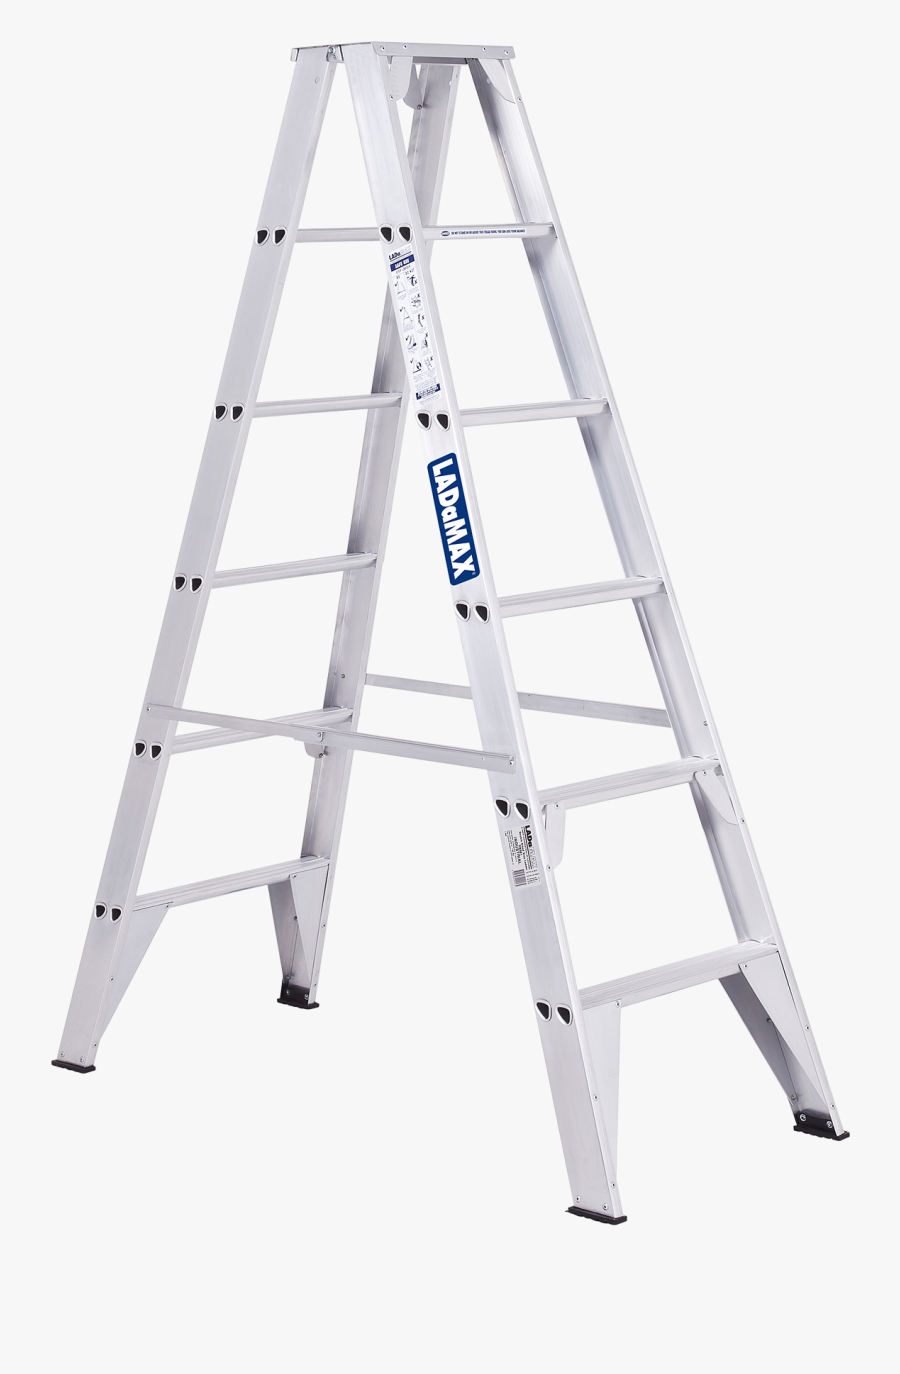 Graphic Free Aluminium Step Ladamax Australia - 3m Ladder, Transparent Clipart